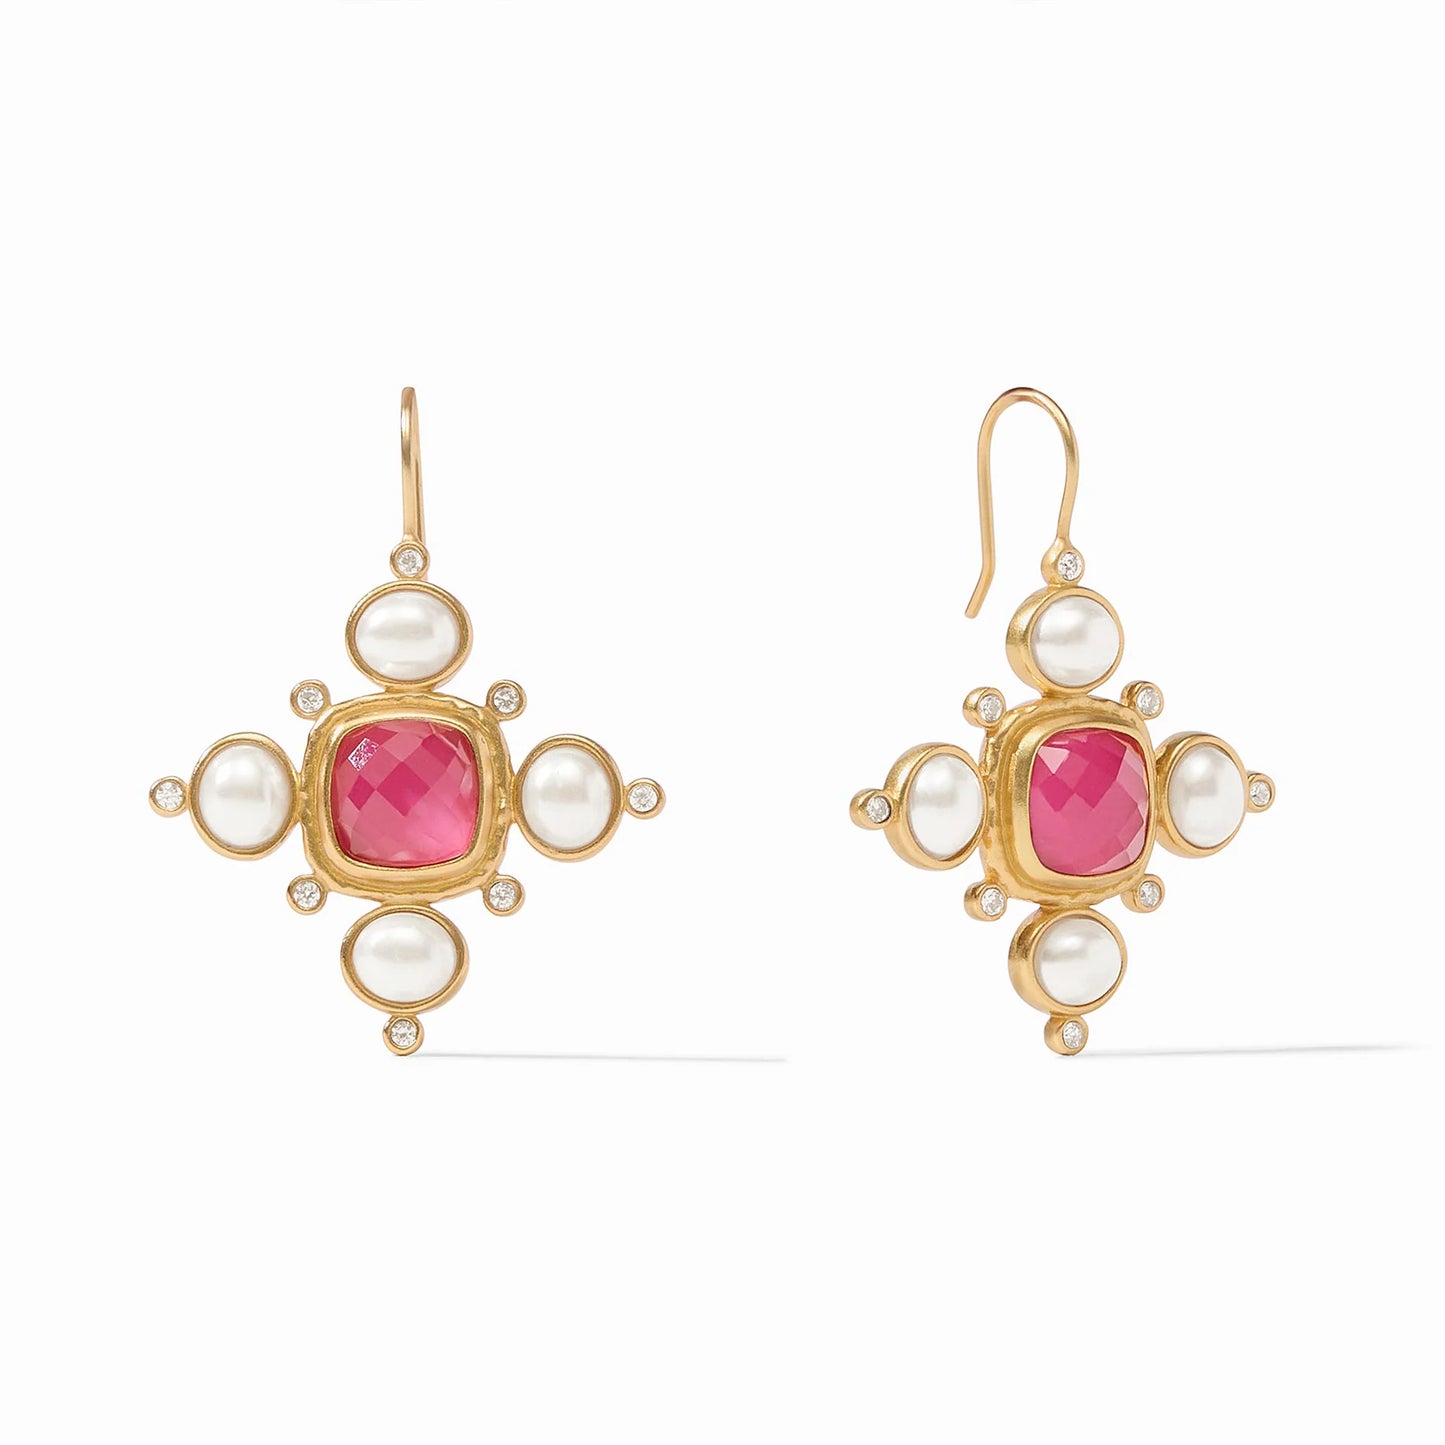 Tudor Earring - Iridescent Raspberry